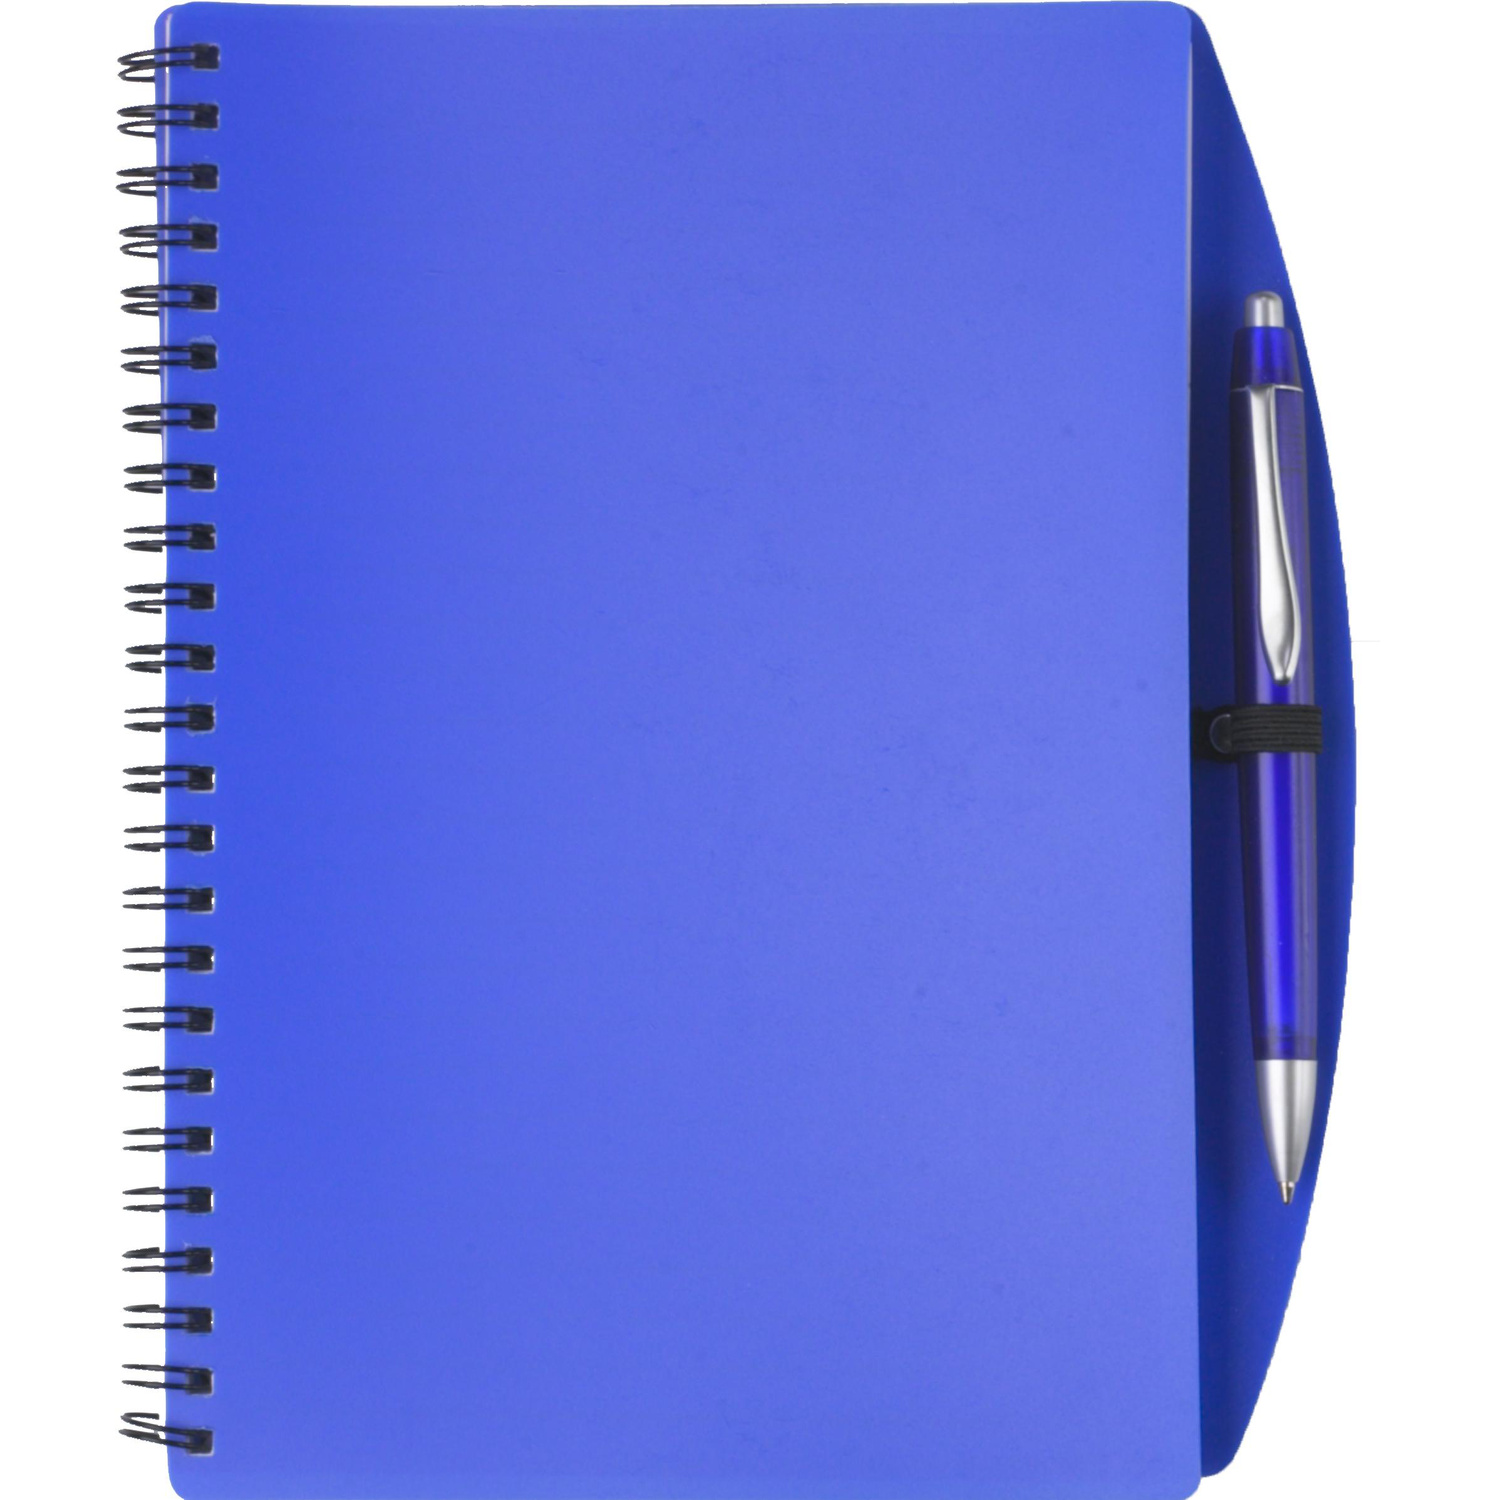 005140 005999999 2d090 frt pro01 fal - Notebook with ballpen (approx. A6)